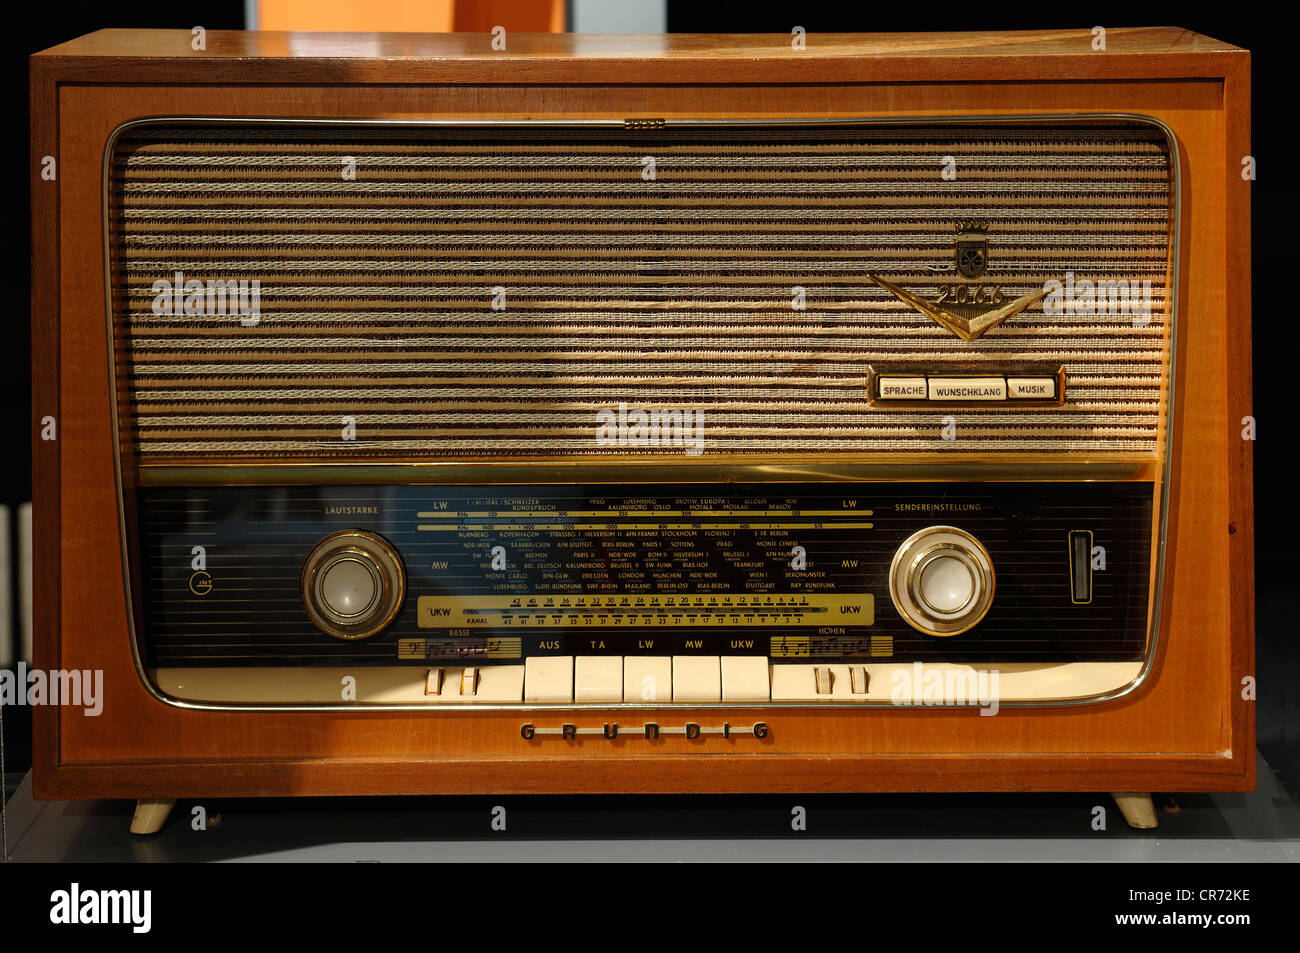 Blaupunkt Radio Vintage Radio Orginal Old Radio Radio Lamp Radio